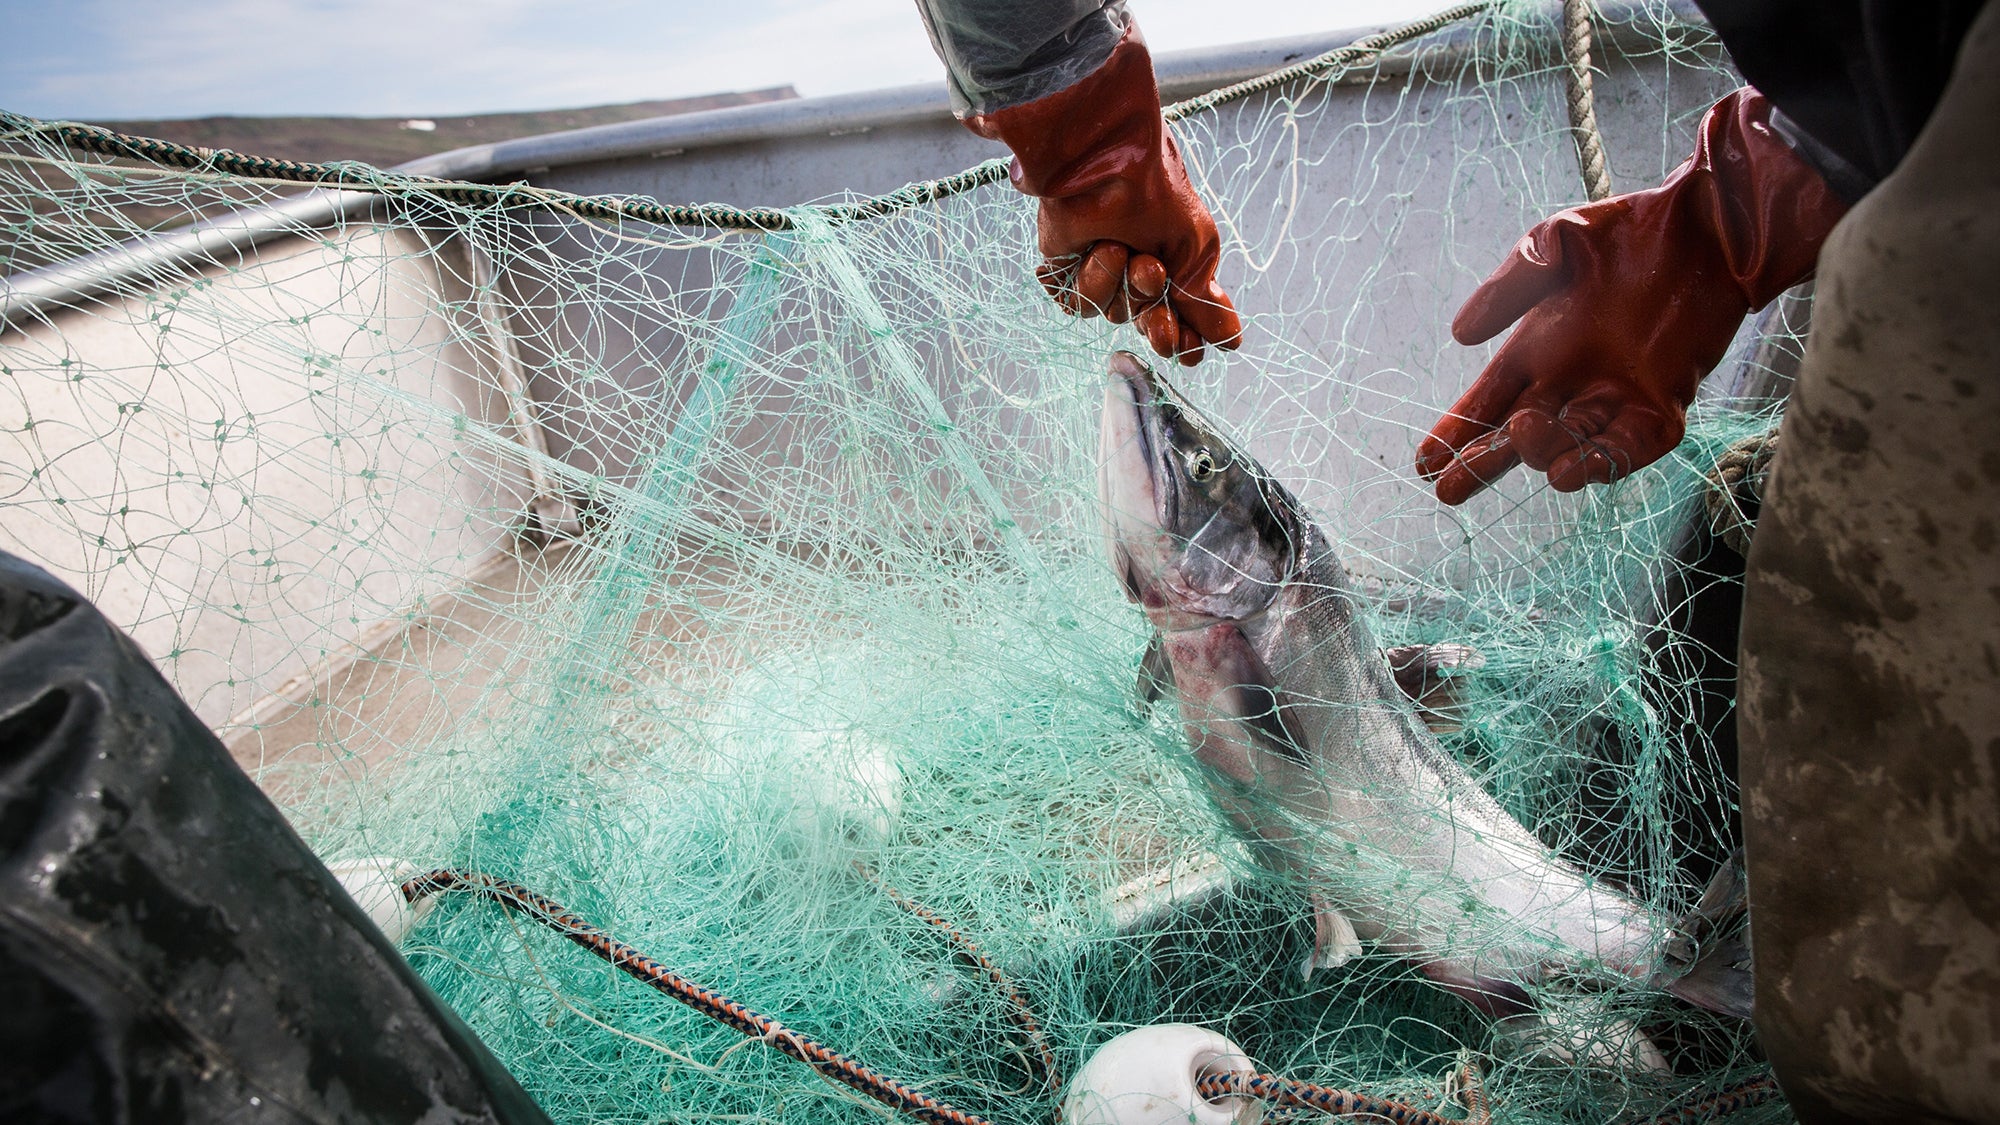 Alors que le saumon disparaît, la bataille pour les droits de pêche des autochtones d’Alaska s’intensifie